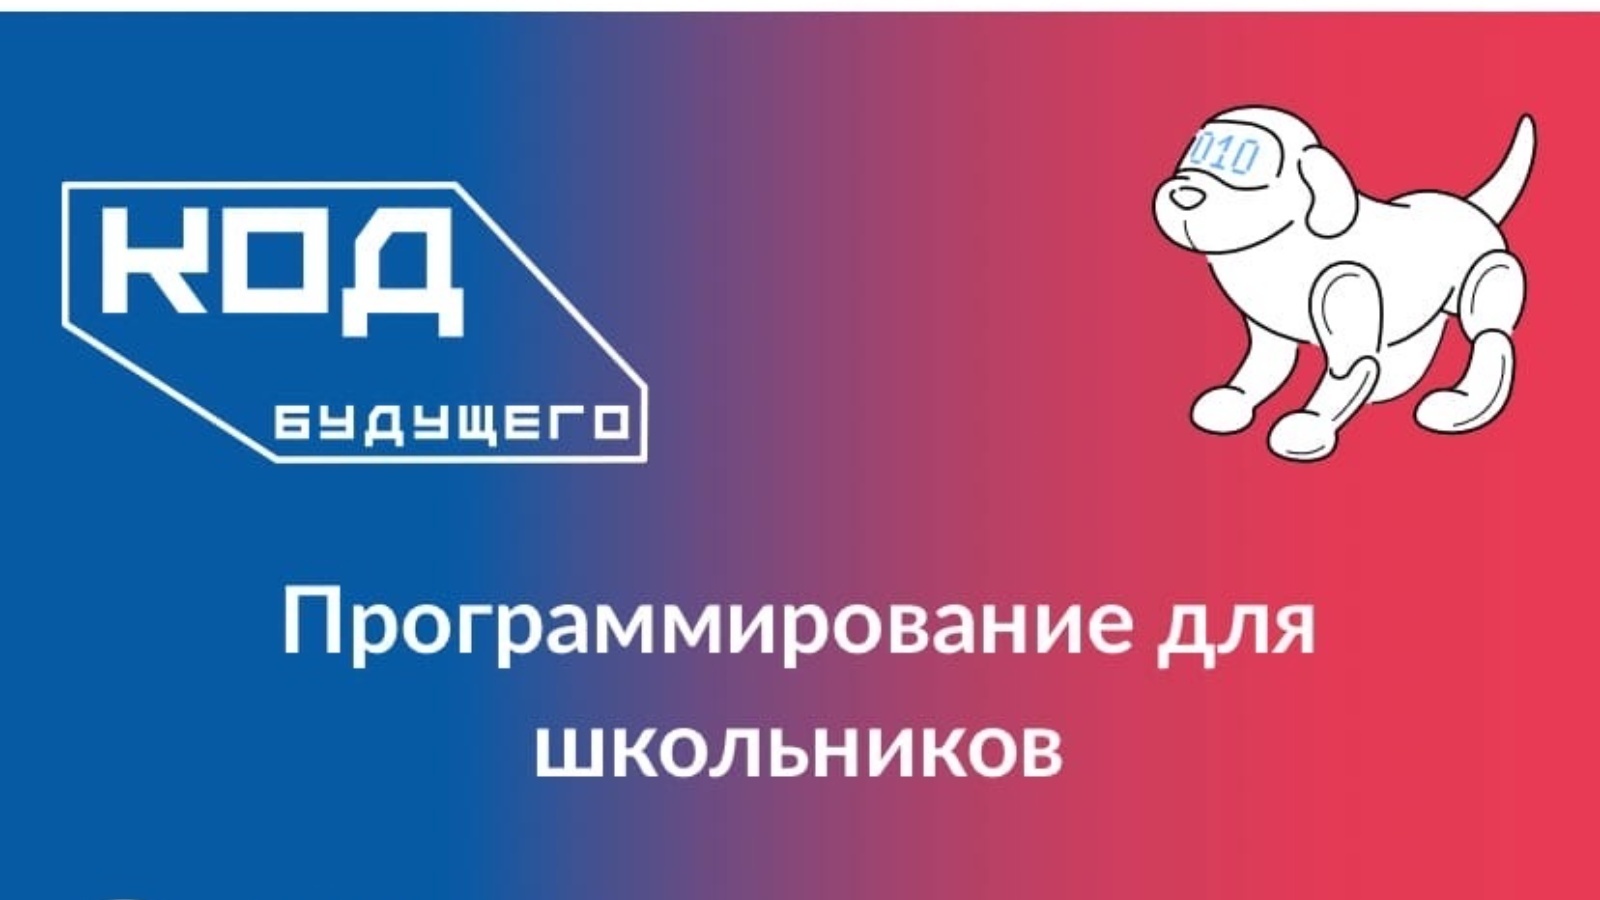 Более 100 тысяч школьников из всех регионов России подали заявки на бесплатные ИТ-курсы «Код будущего»